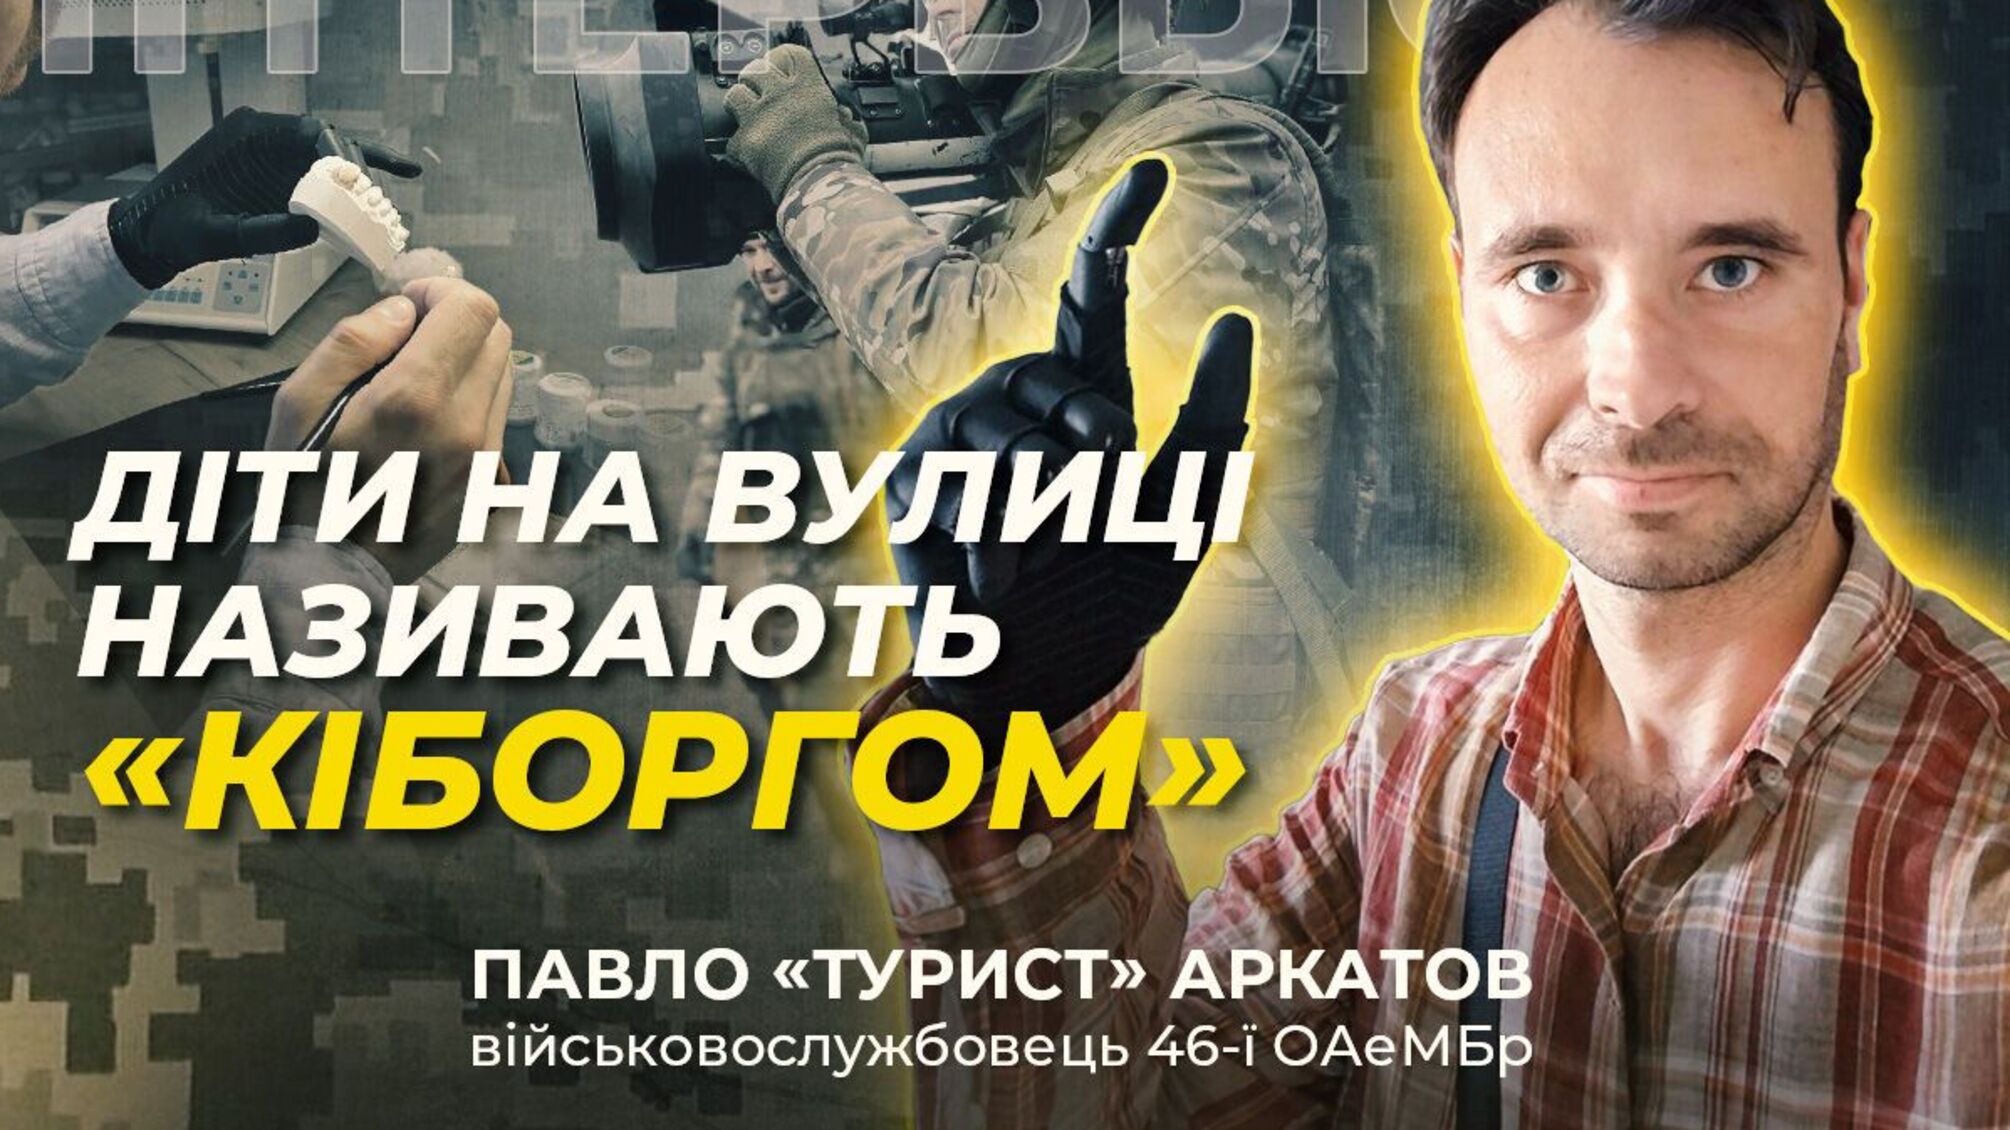 'С бионическим протезом чувствую себя более цельным': воин ВСУ Аркатов о восстановлении после тяжелого ранения